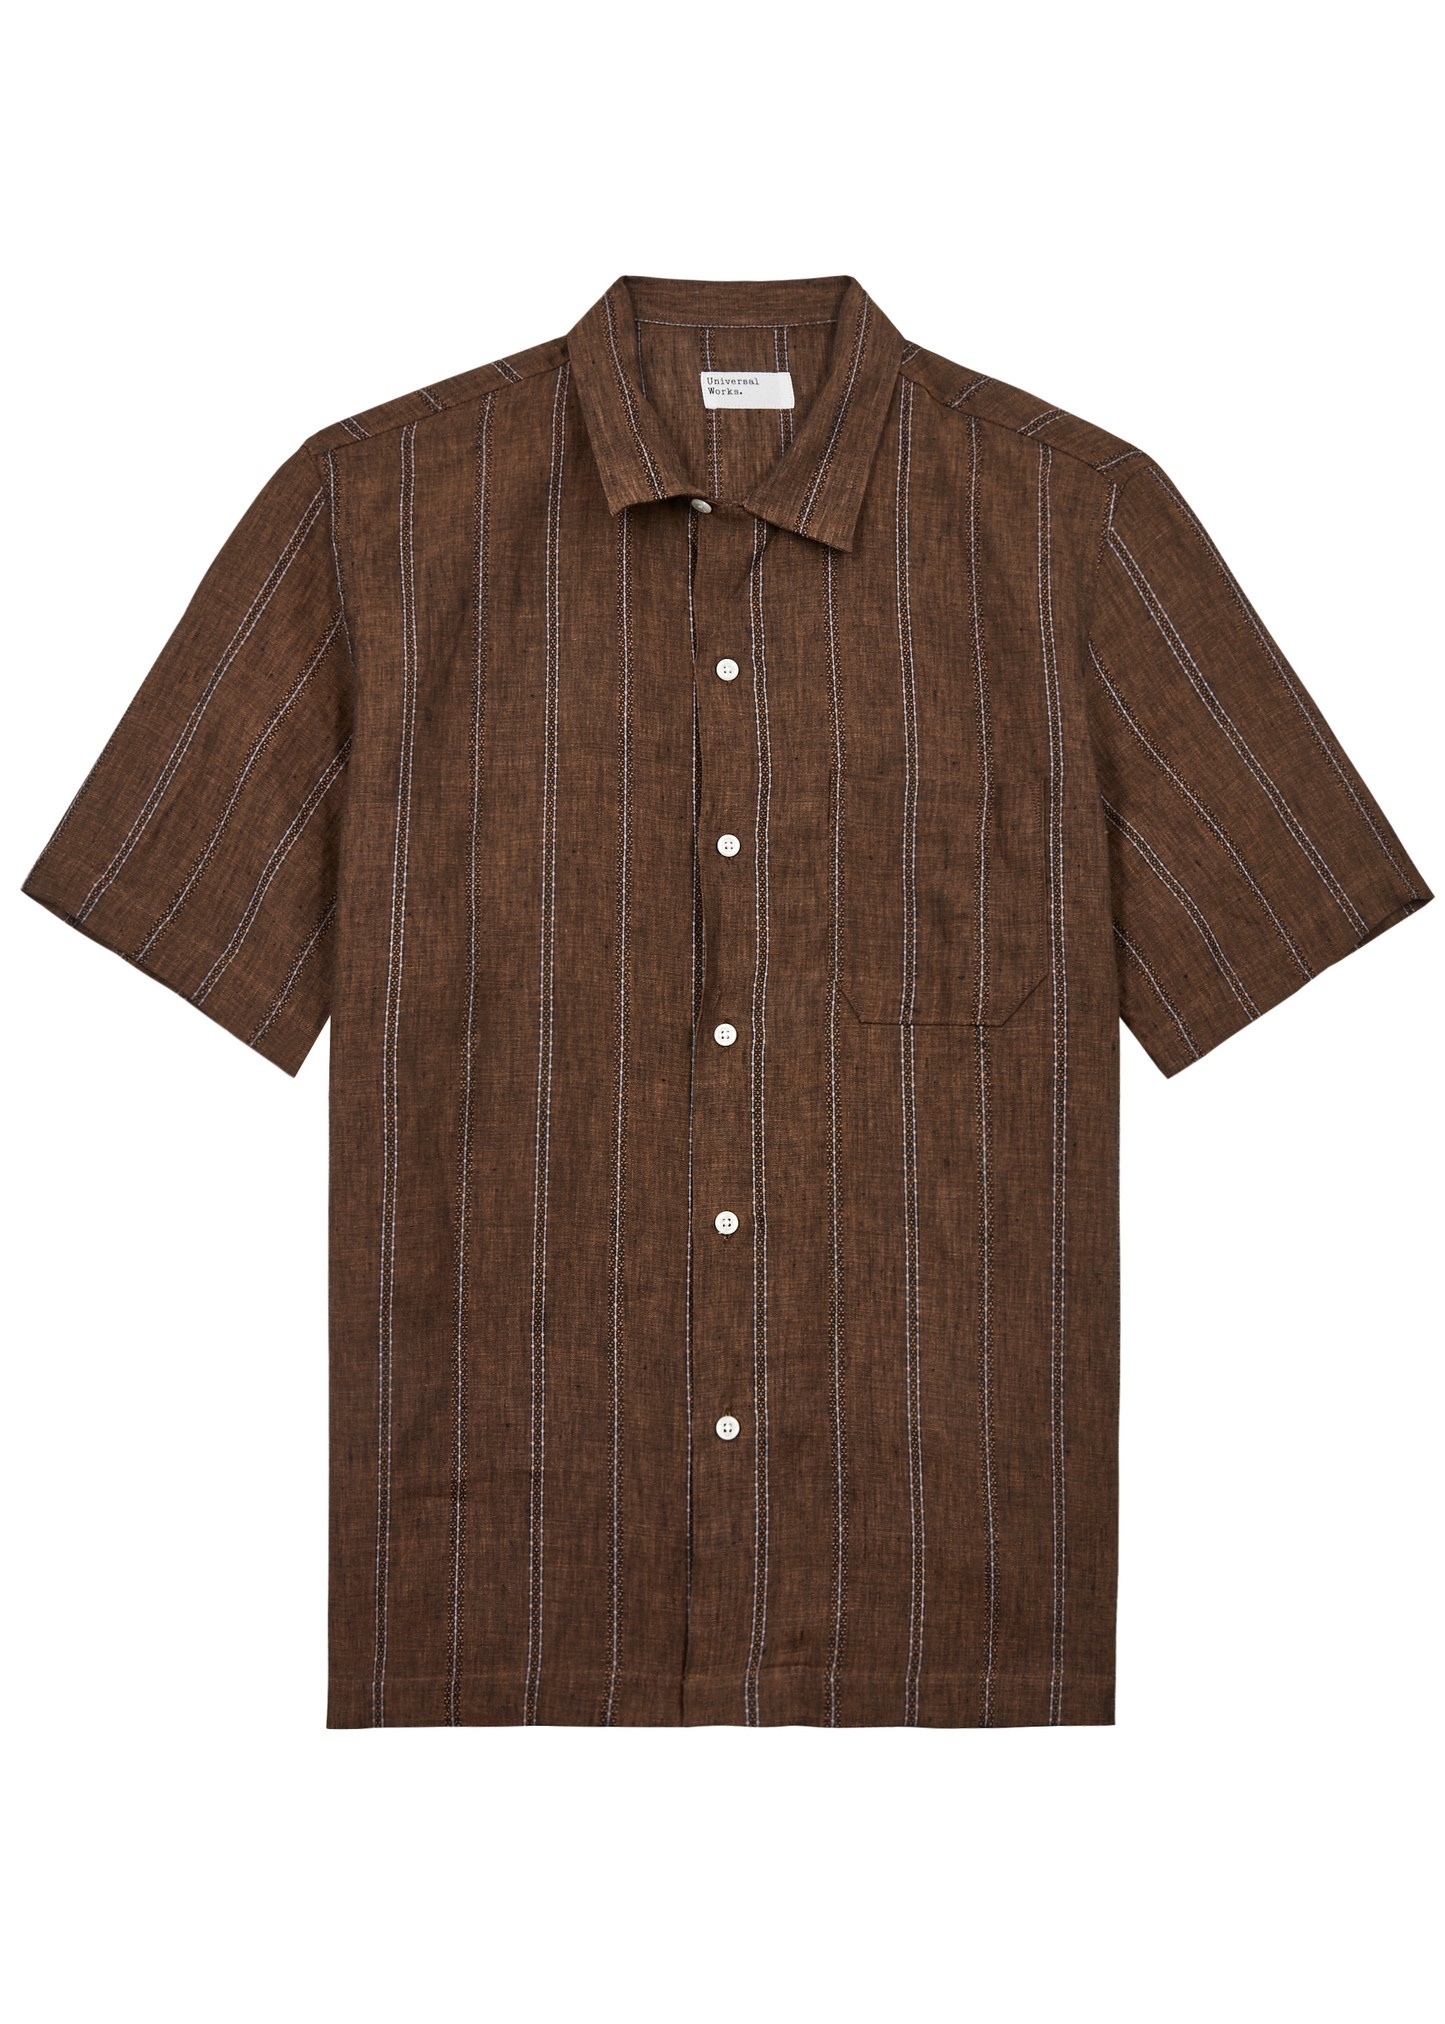 Road striped linen shirt - 1